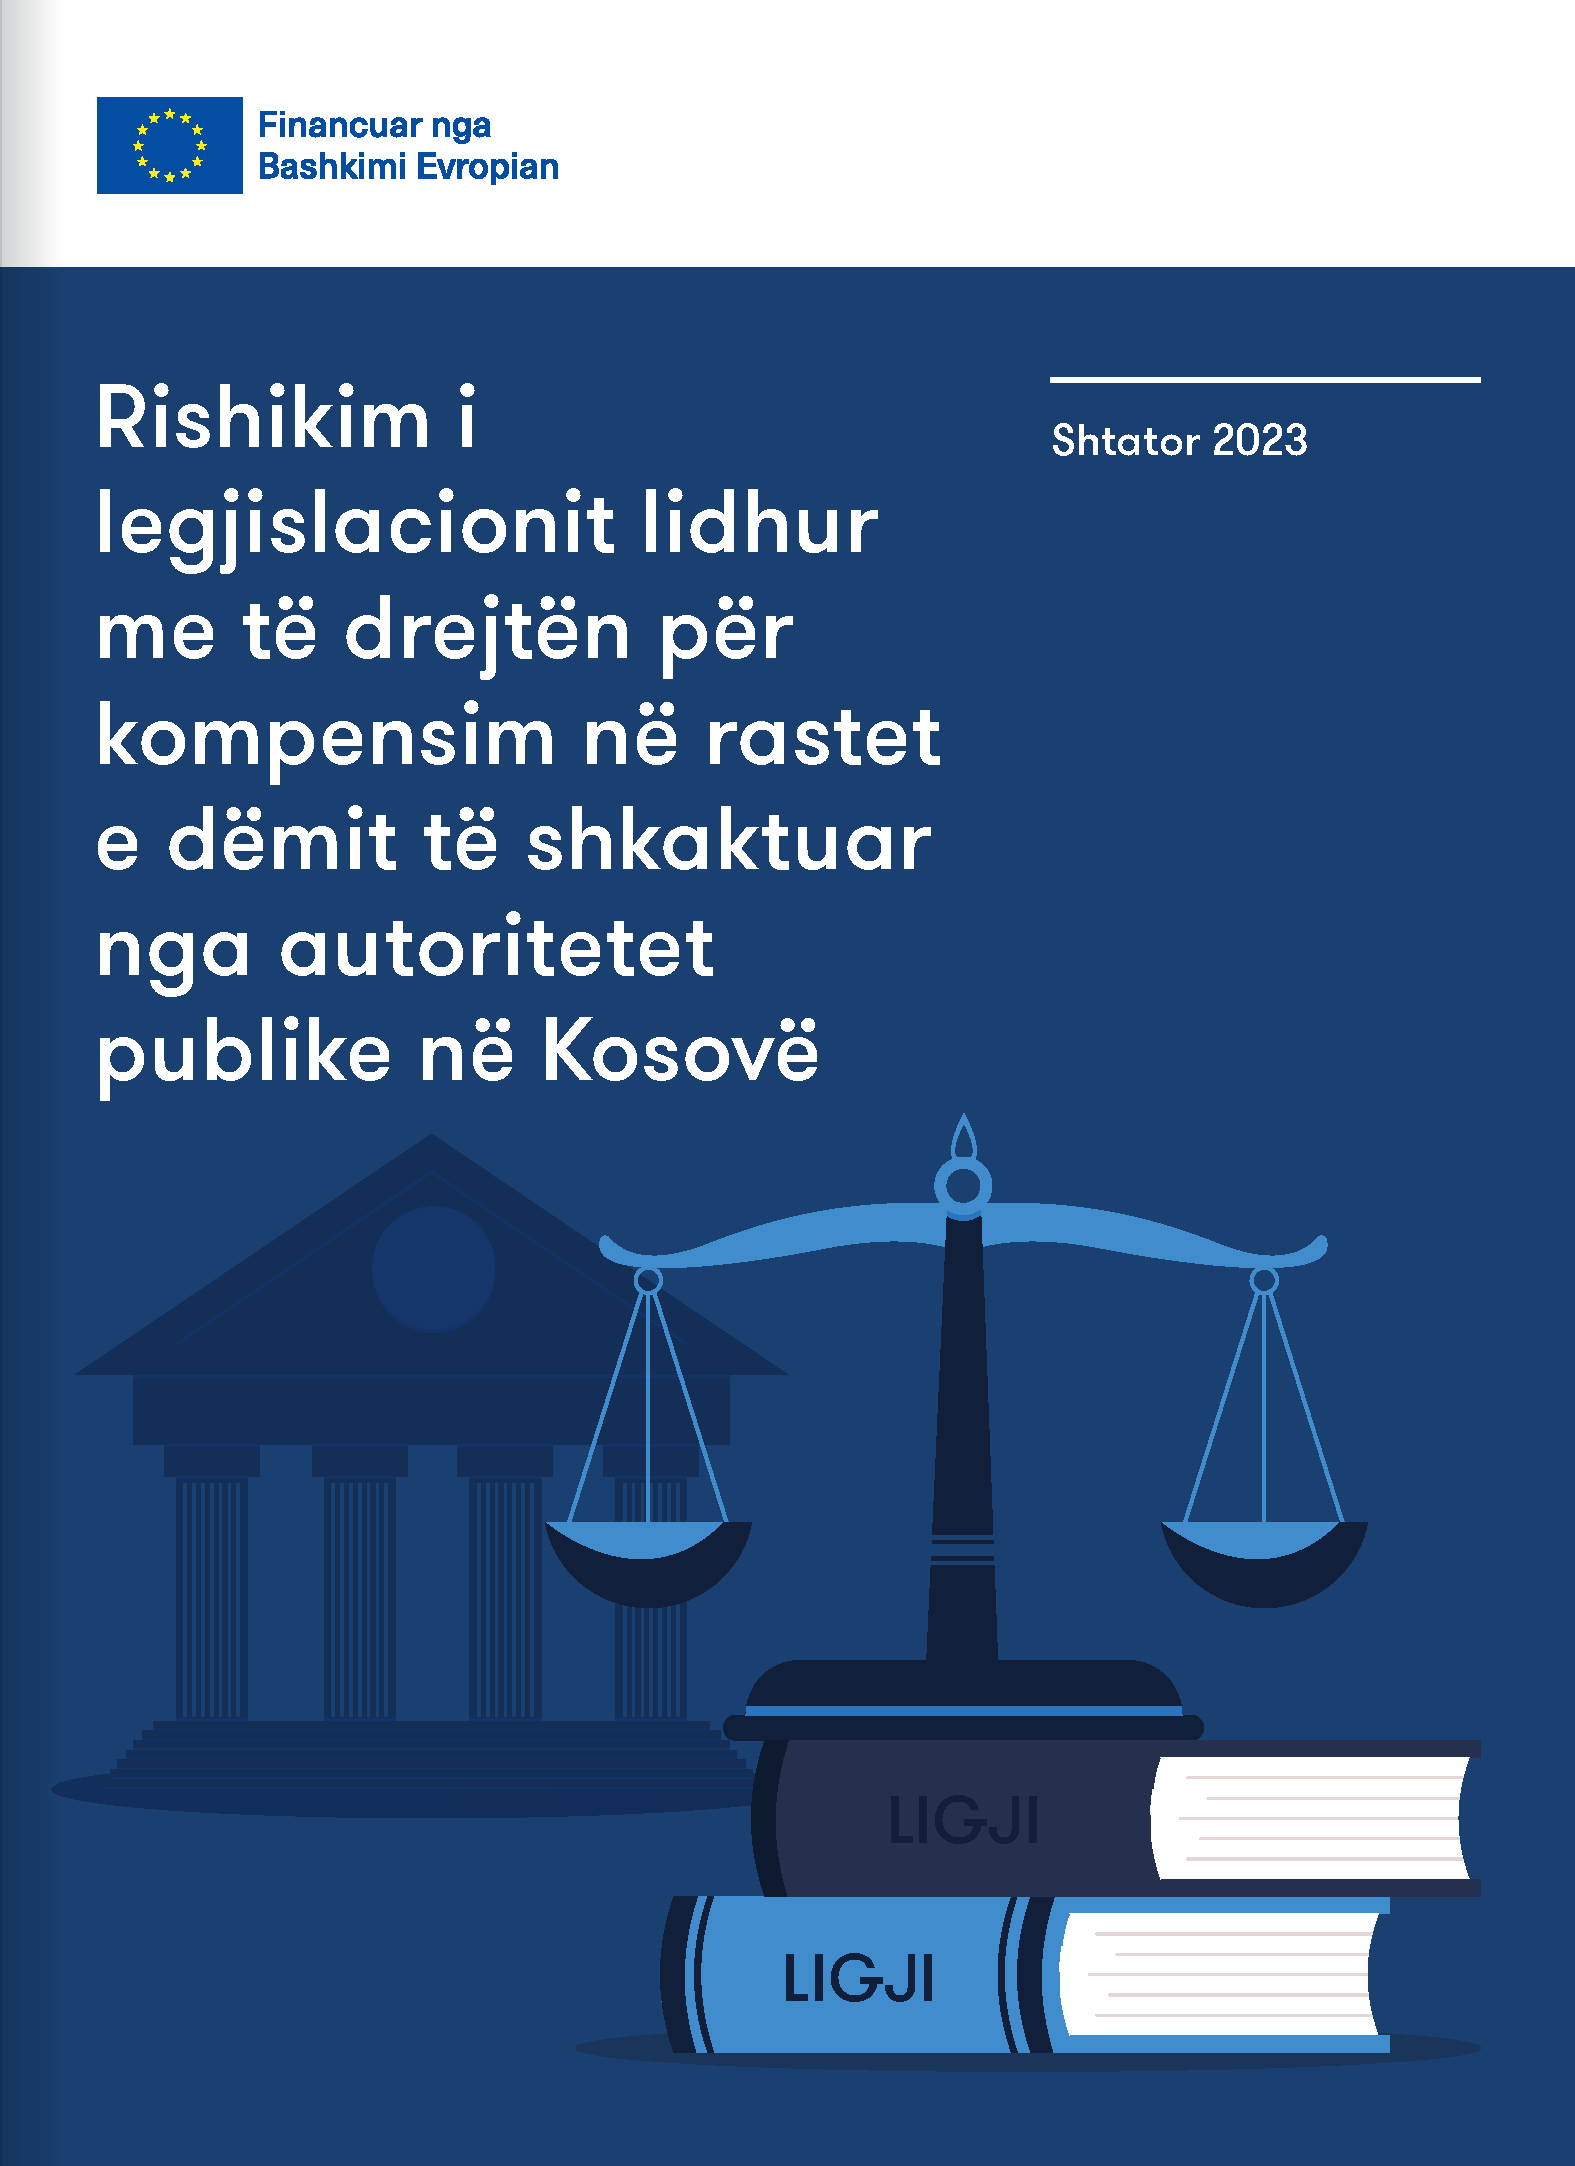 Rishikimi i legjislacionit lidhur me të drejtën për kompensim në rastet e dëmit të shkaktuar nga autoritetet publike në Kosovë